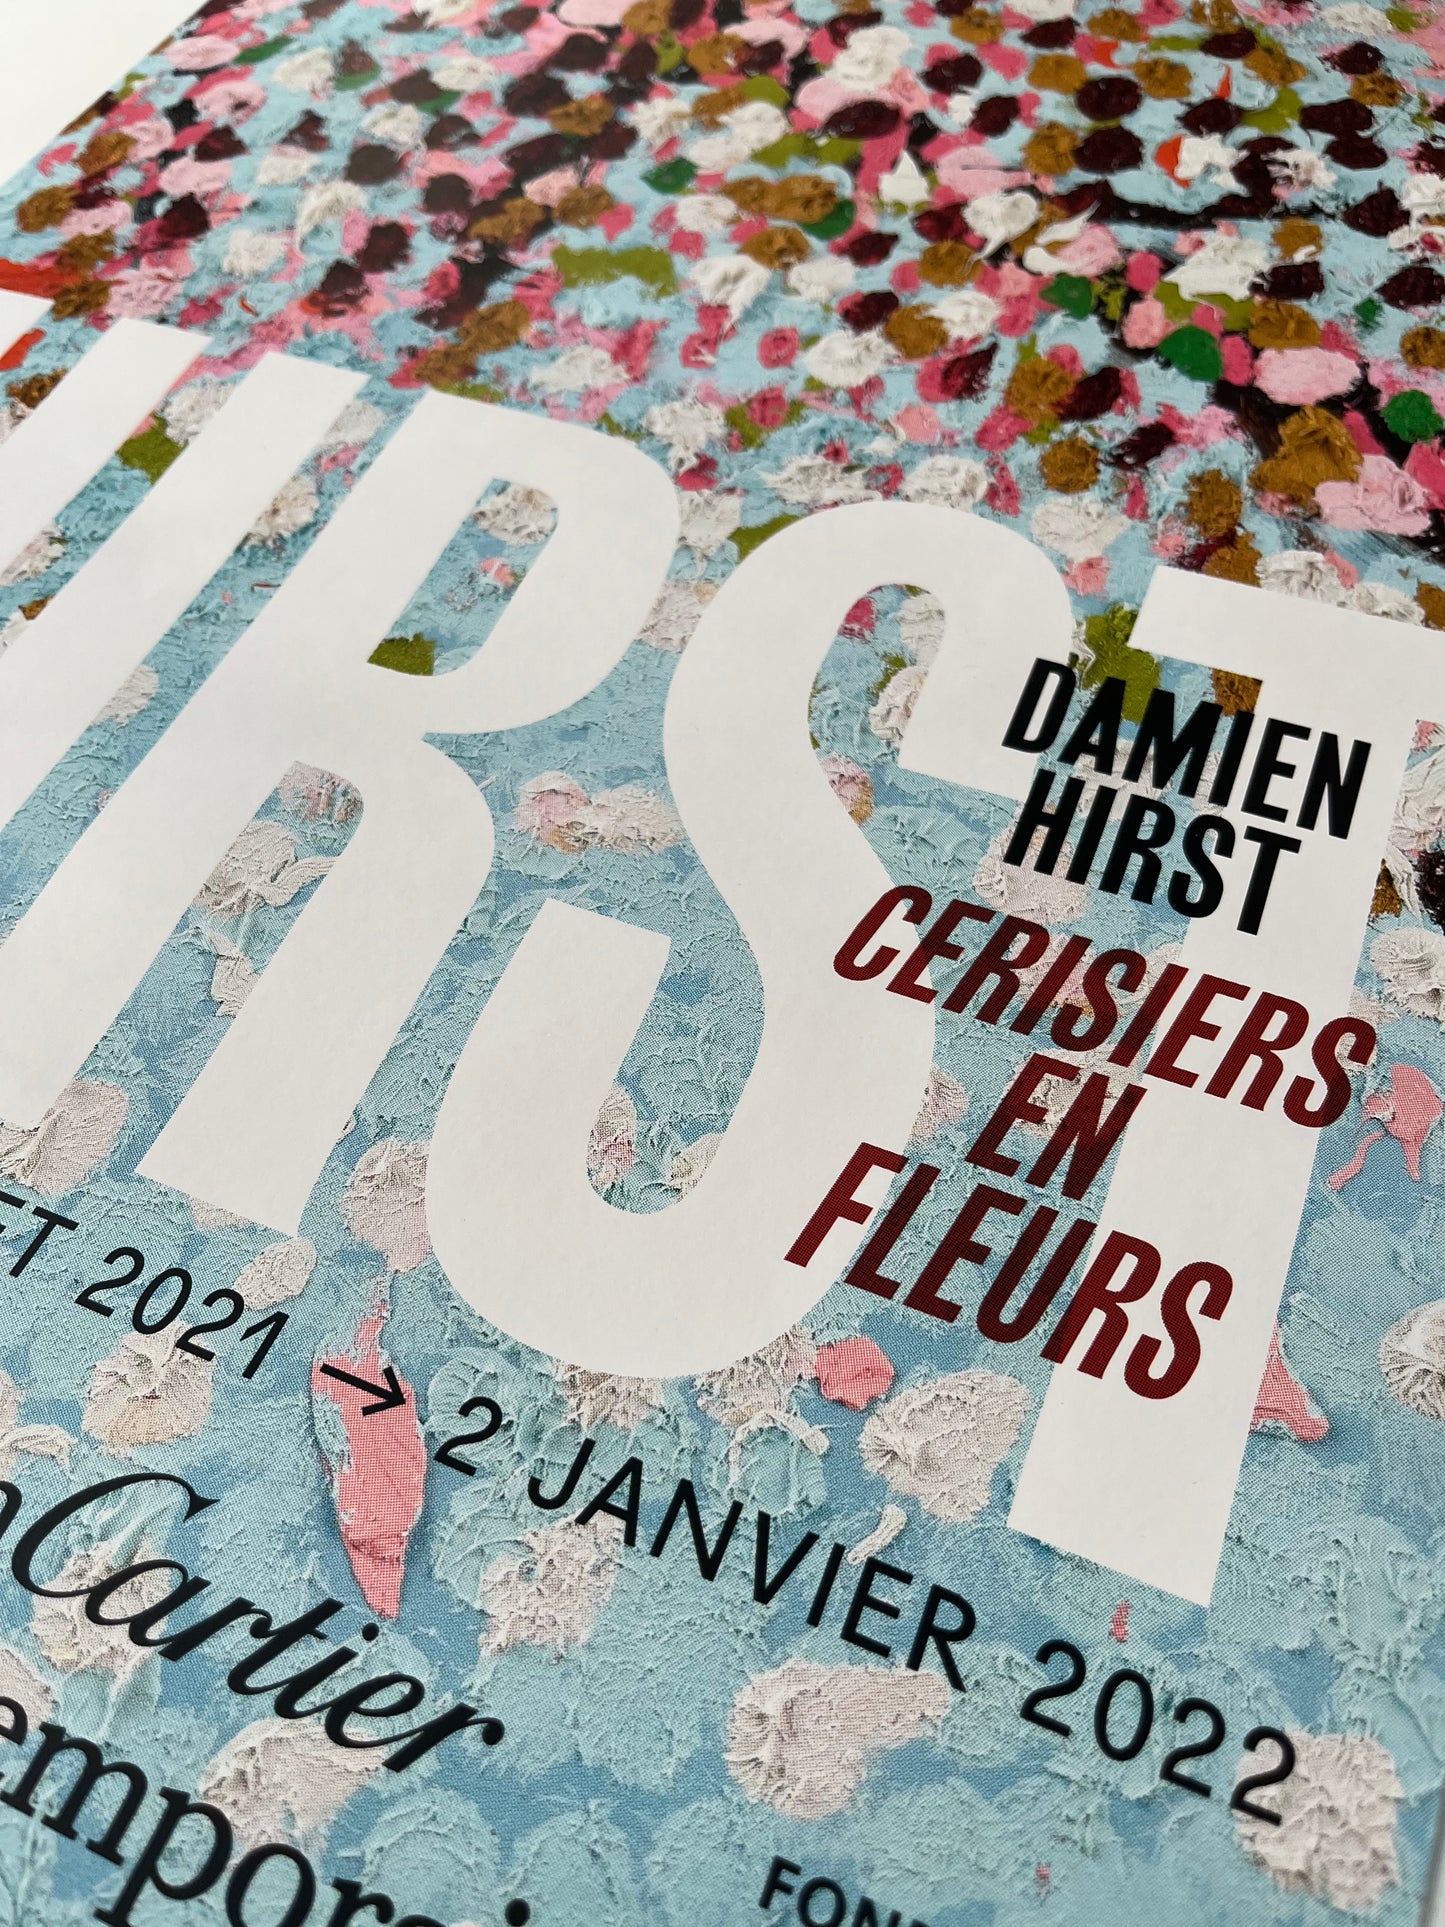 Damien Hirst x Fondation Cartier Paris© “Flores de cerezo”, Cartel original de la exposición